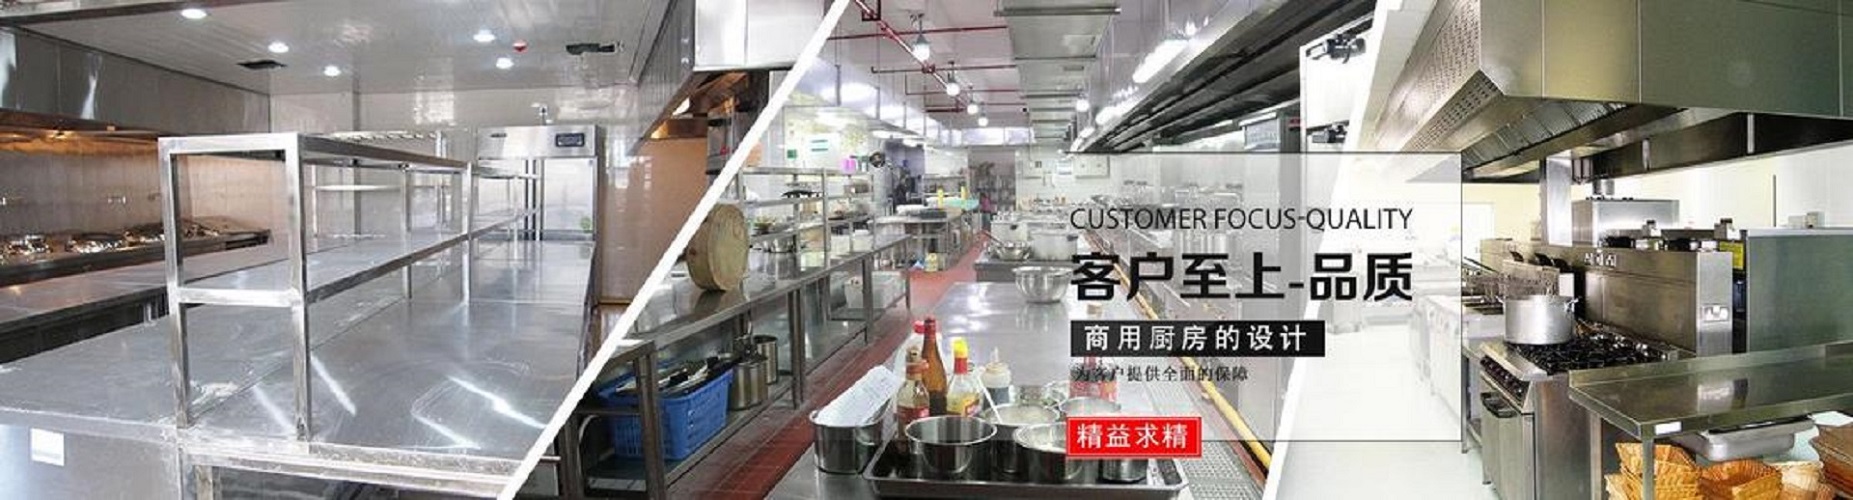 贵州厨房设施有限公司